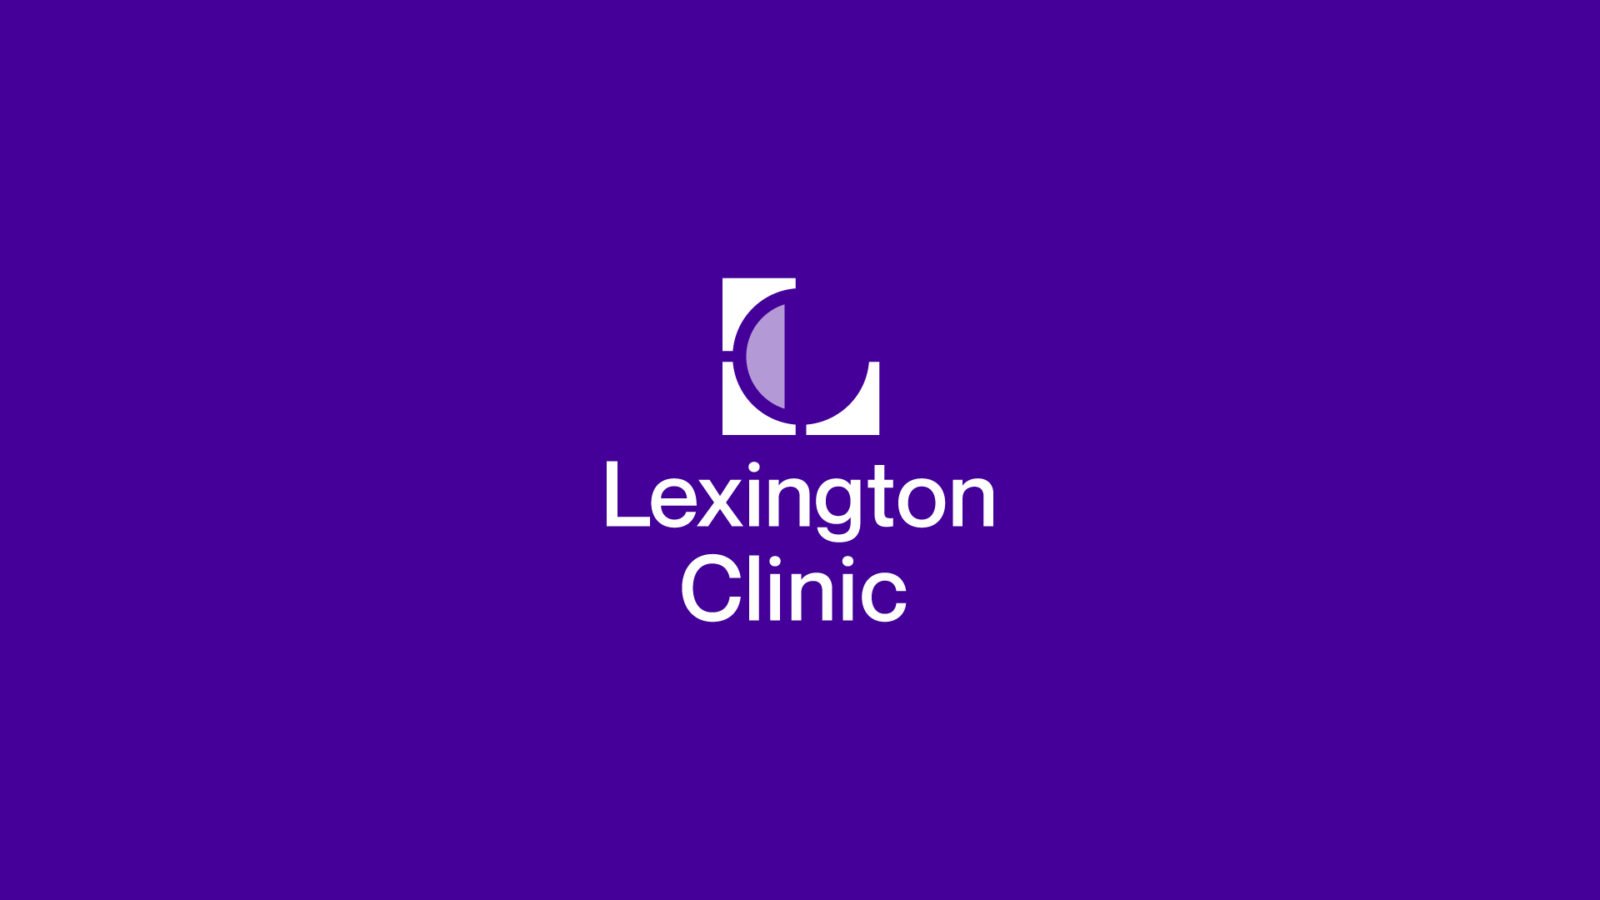 Lexington Clinic Hospital Brand Logo